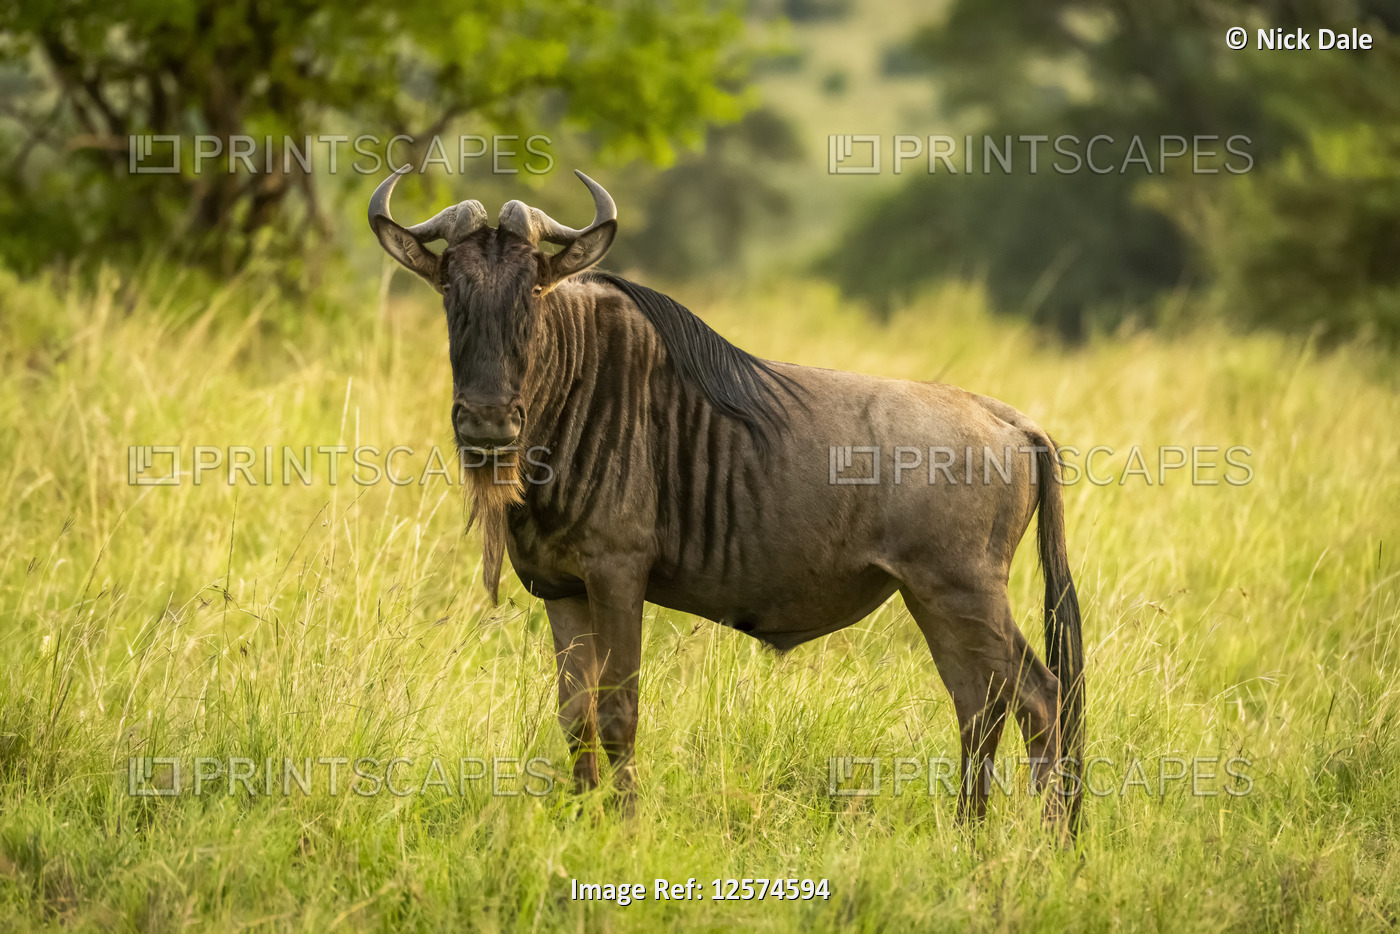 Blue wildebeest (Connochaetes taurinus) stands watching camera in grass, ...